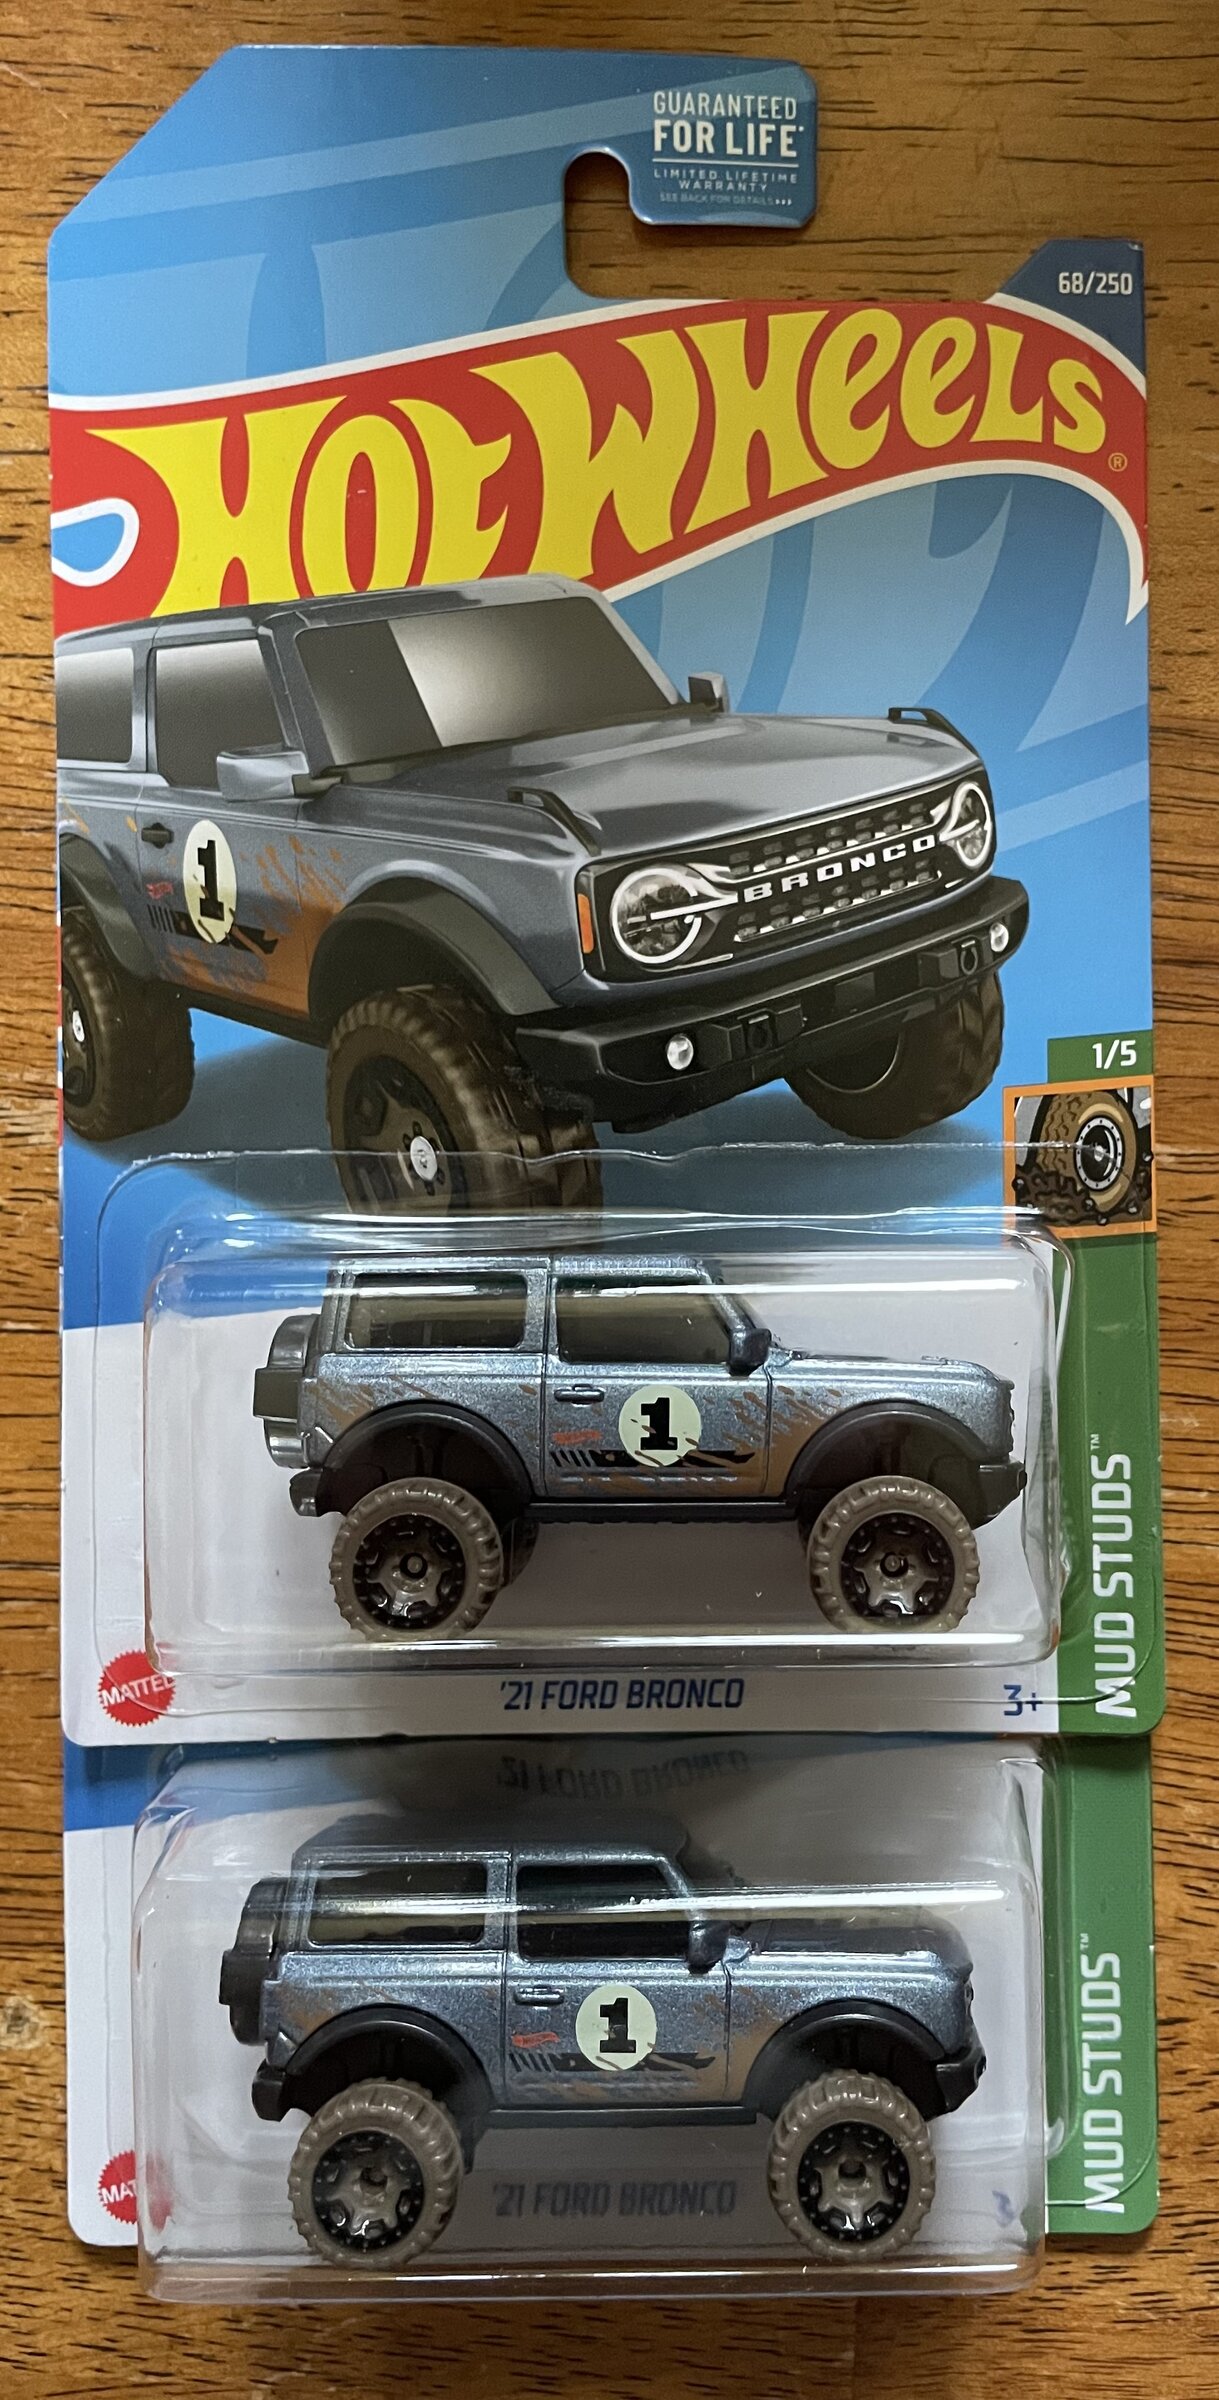 Ford Bronco Bronco Toys, Diecast, RC 3F0DCBC0-03A8-471F-800A-56AD0FE4C394